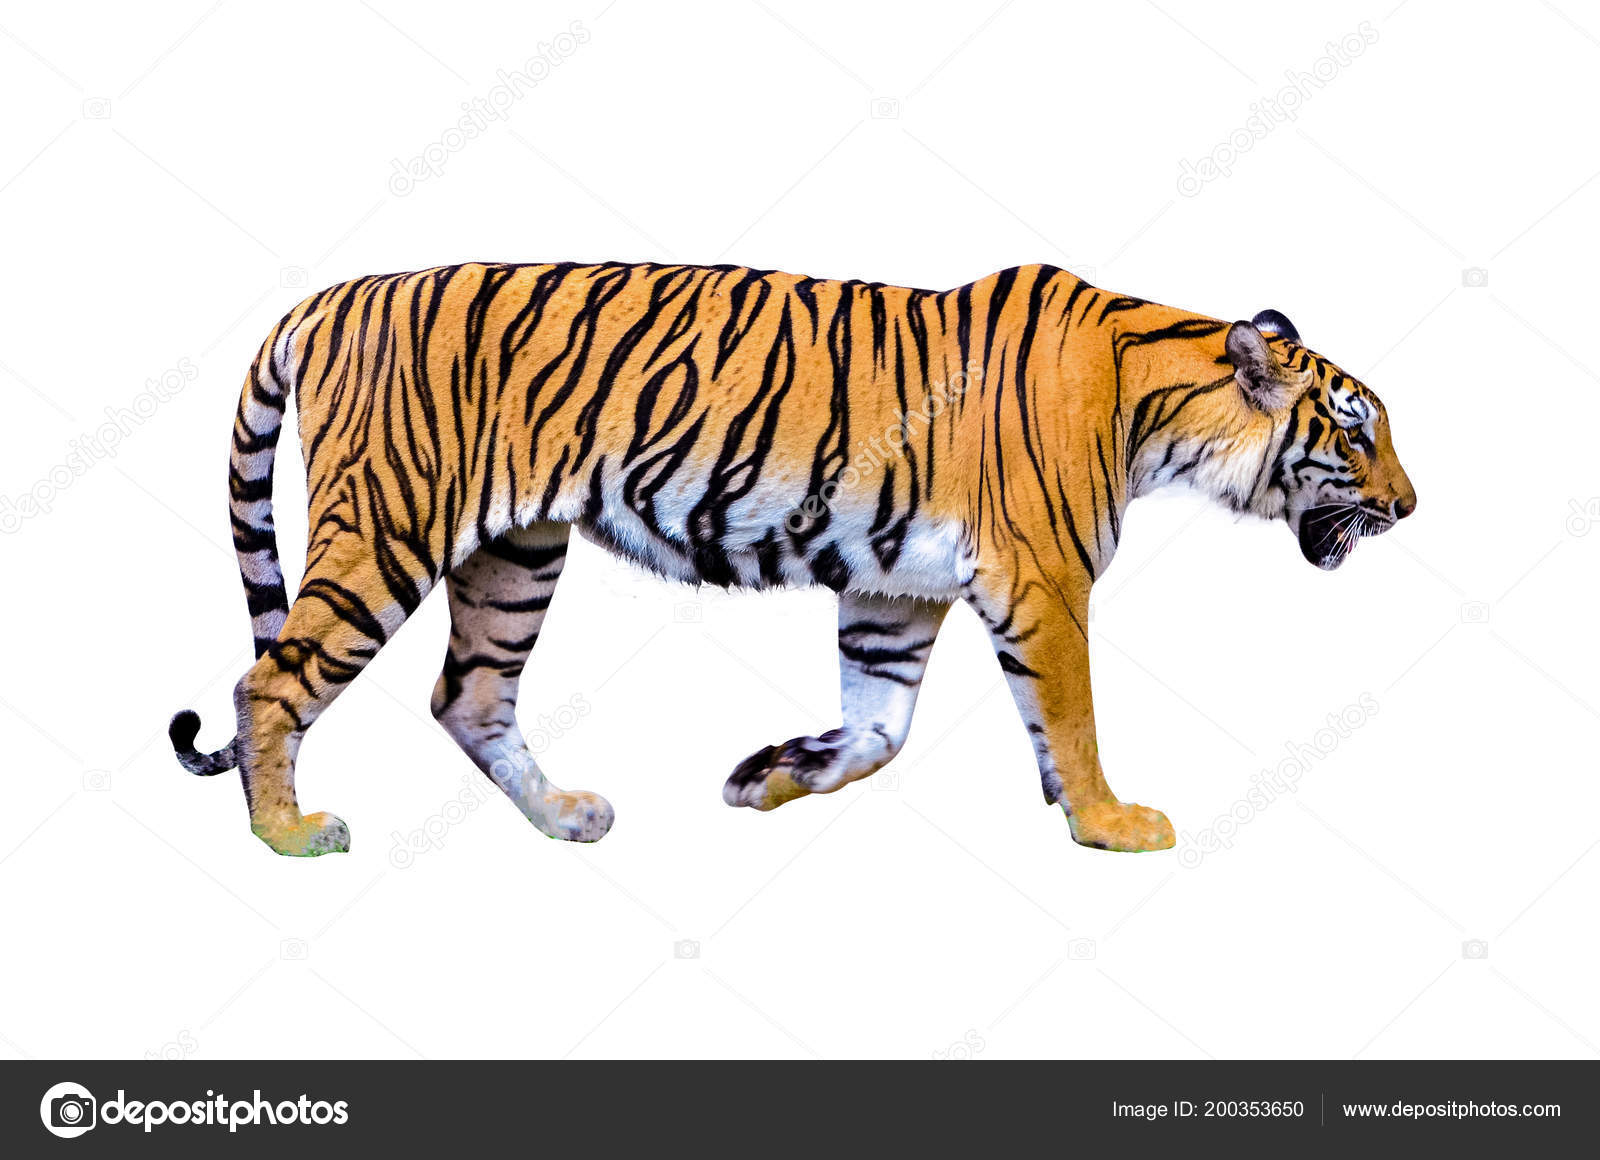 Còn gì tuyệt vời hơn khi được thưởng thức hình ảnh của một con hổ trên nền trắng trong sự nghiêm trang và vẻ đẹp hoang dã của loài thú. Một bức ảnh tuyệt vời sẽ đưa bạn đến thế giới đầy màu sắc và cảm xúc của động vật hoang dã.